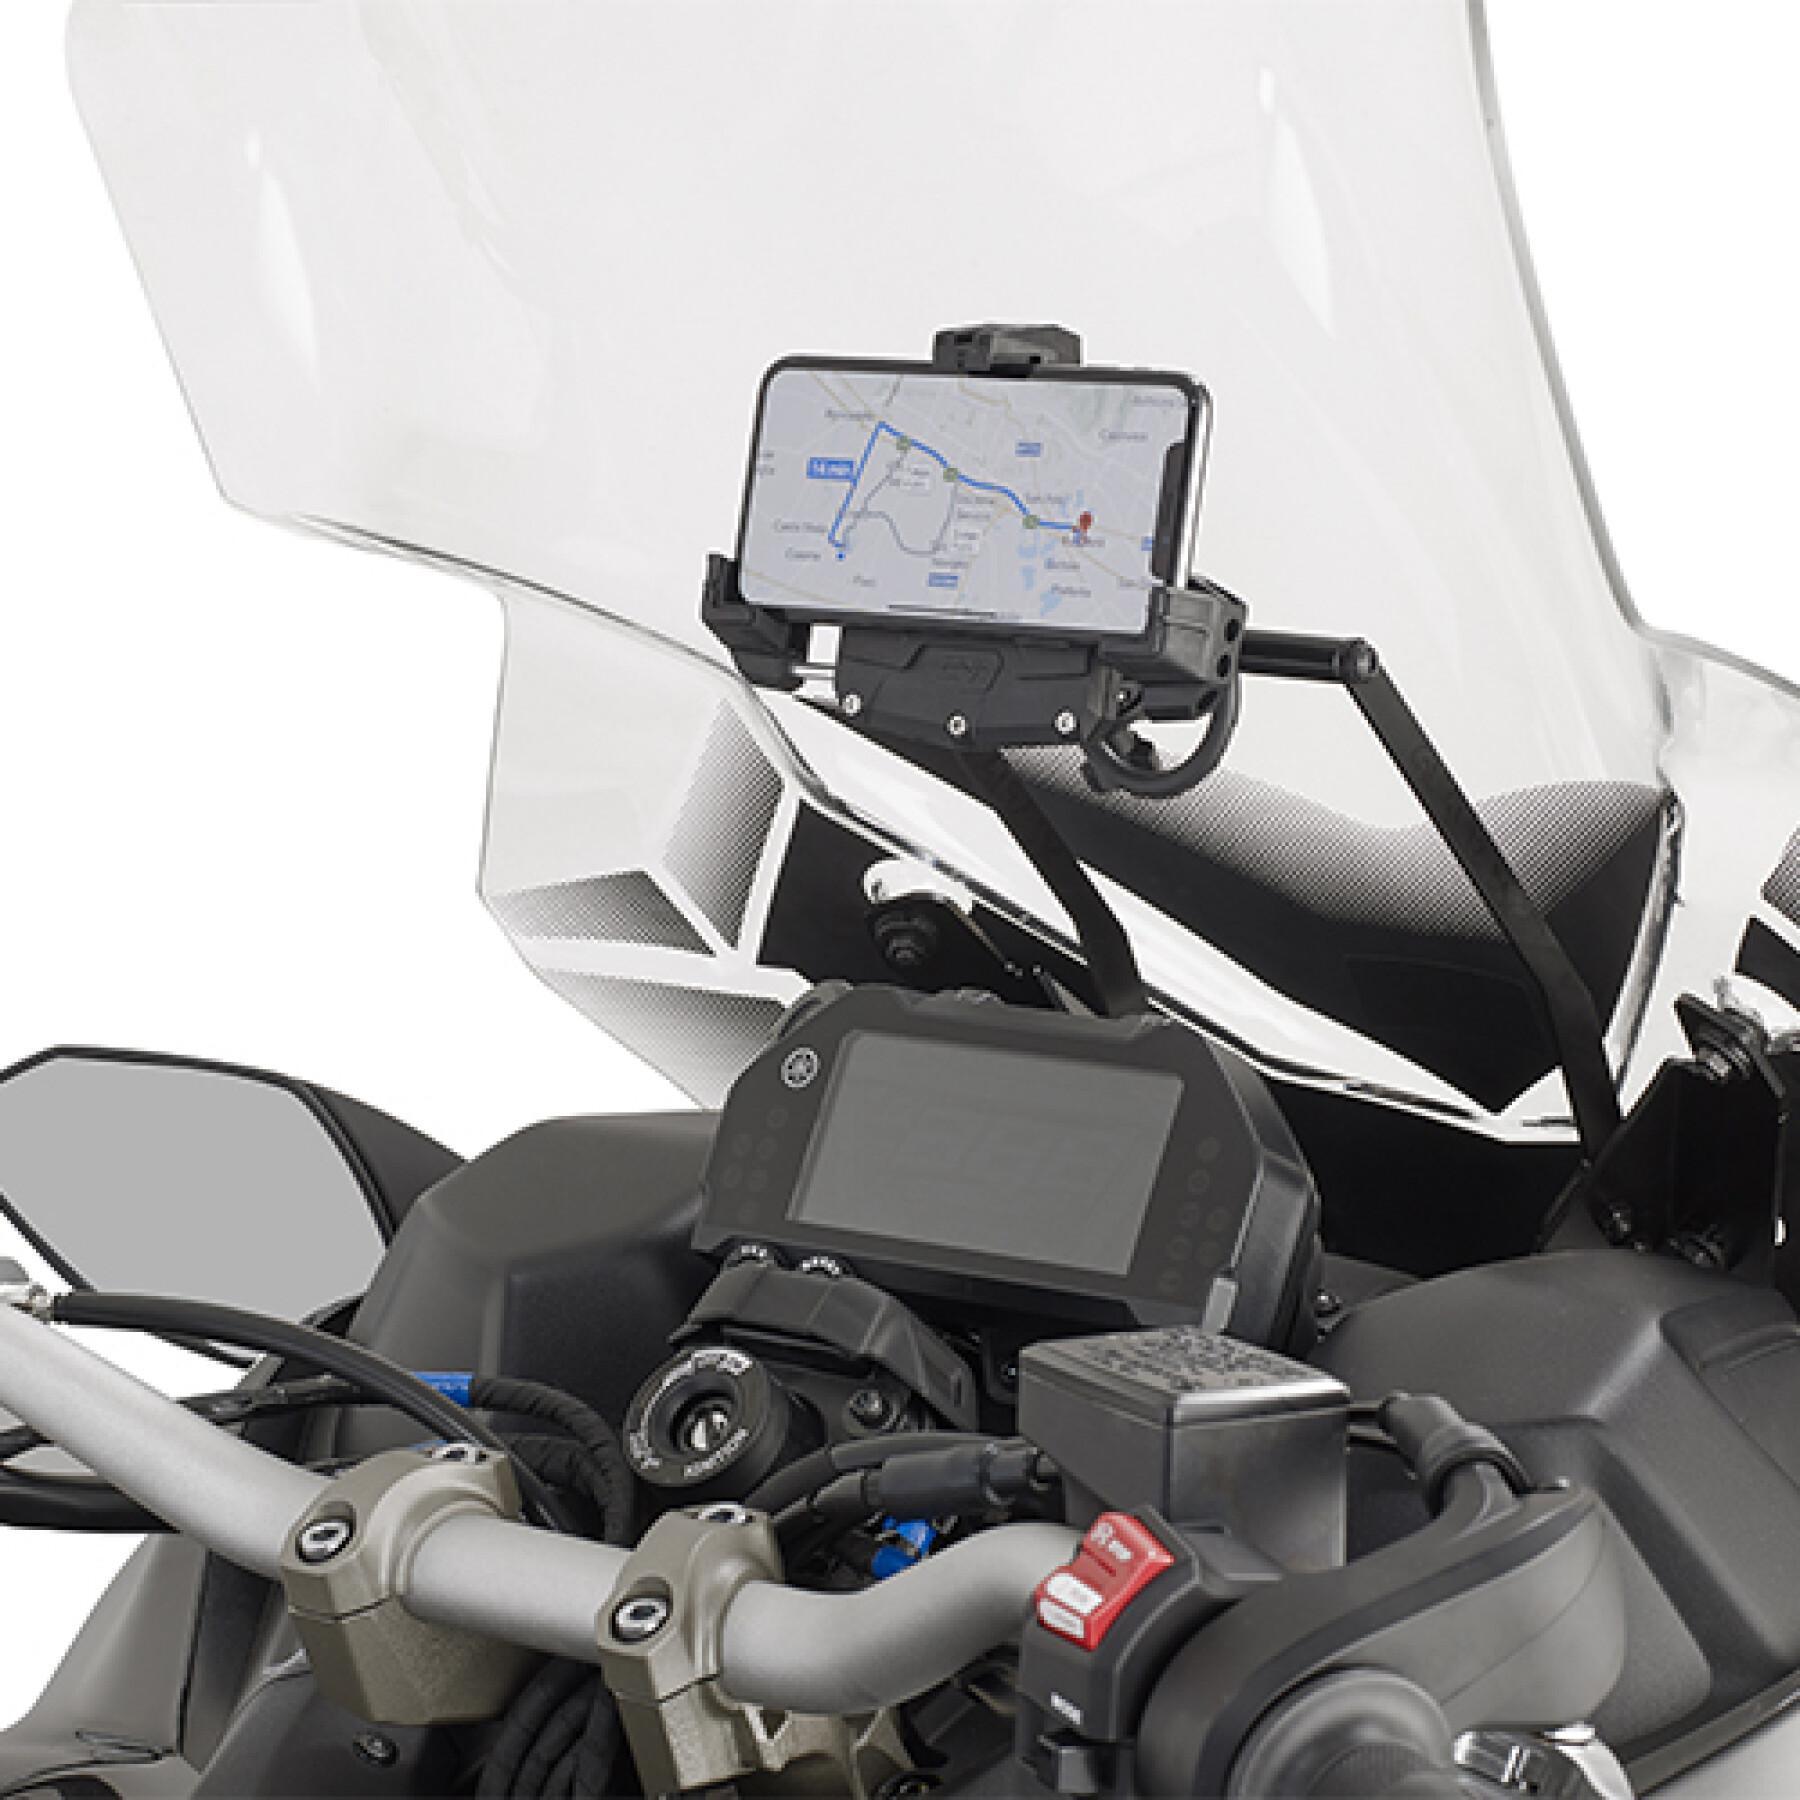 Châssis support GPS Givi Yamaha MT09 tracer